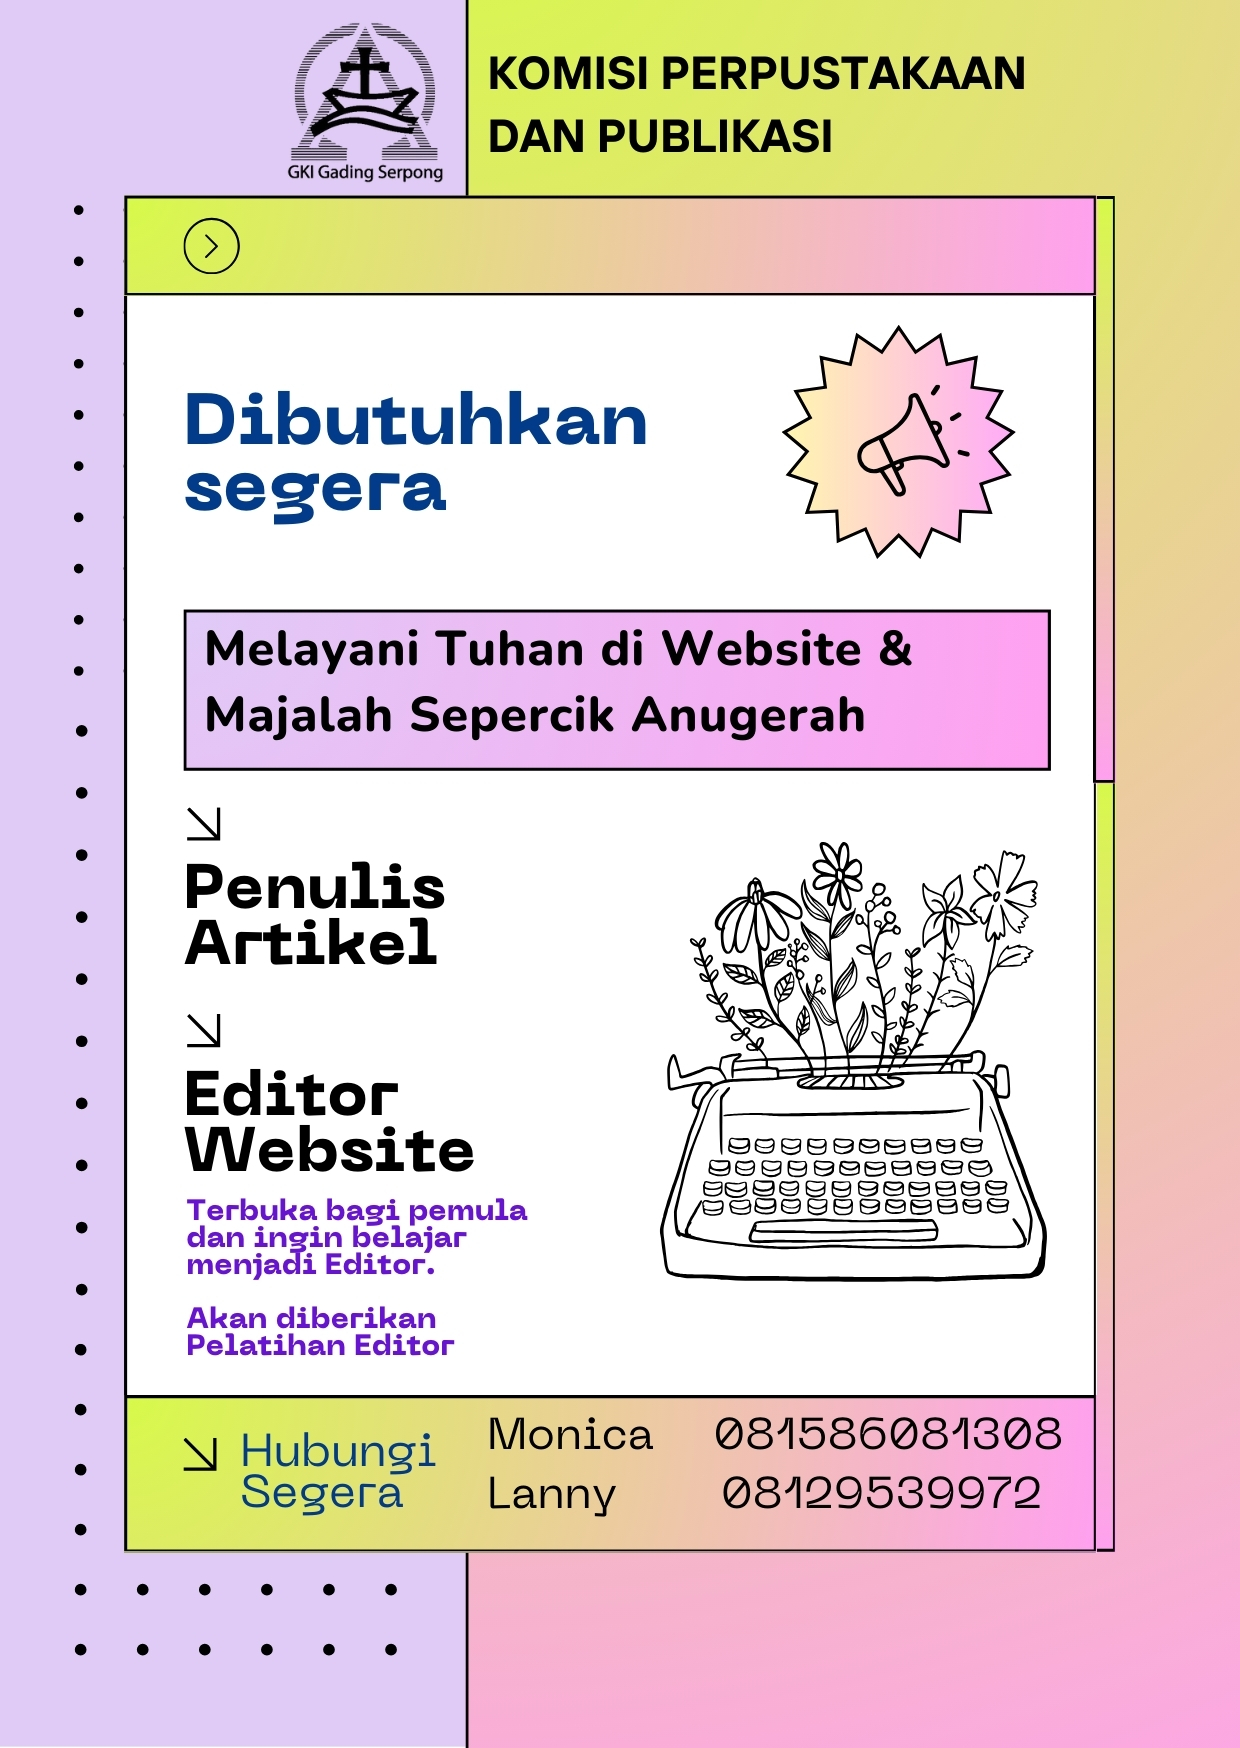 Mari Melayani di Website & Majalah Sepercik Anugerah